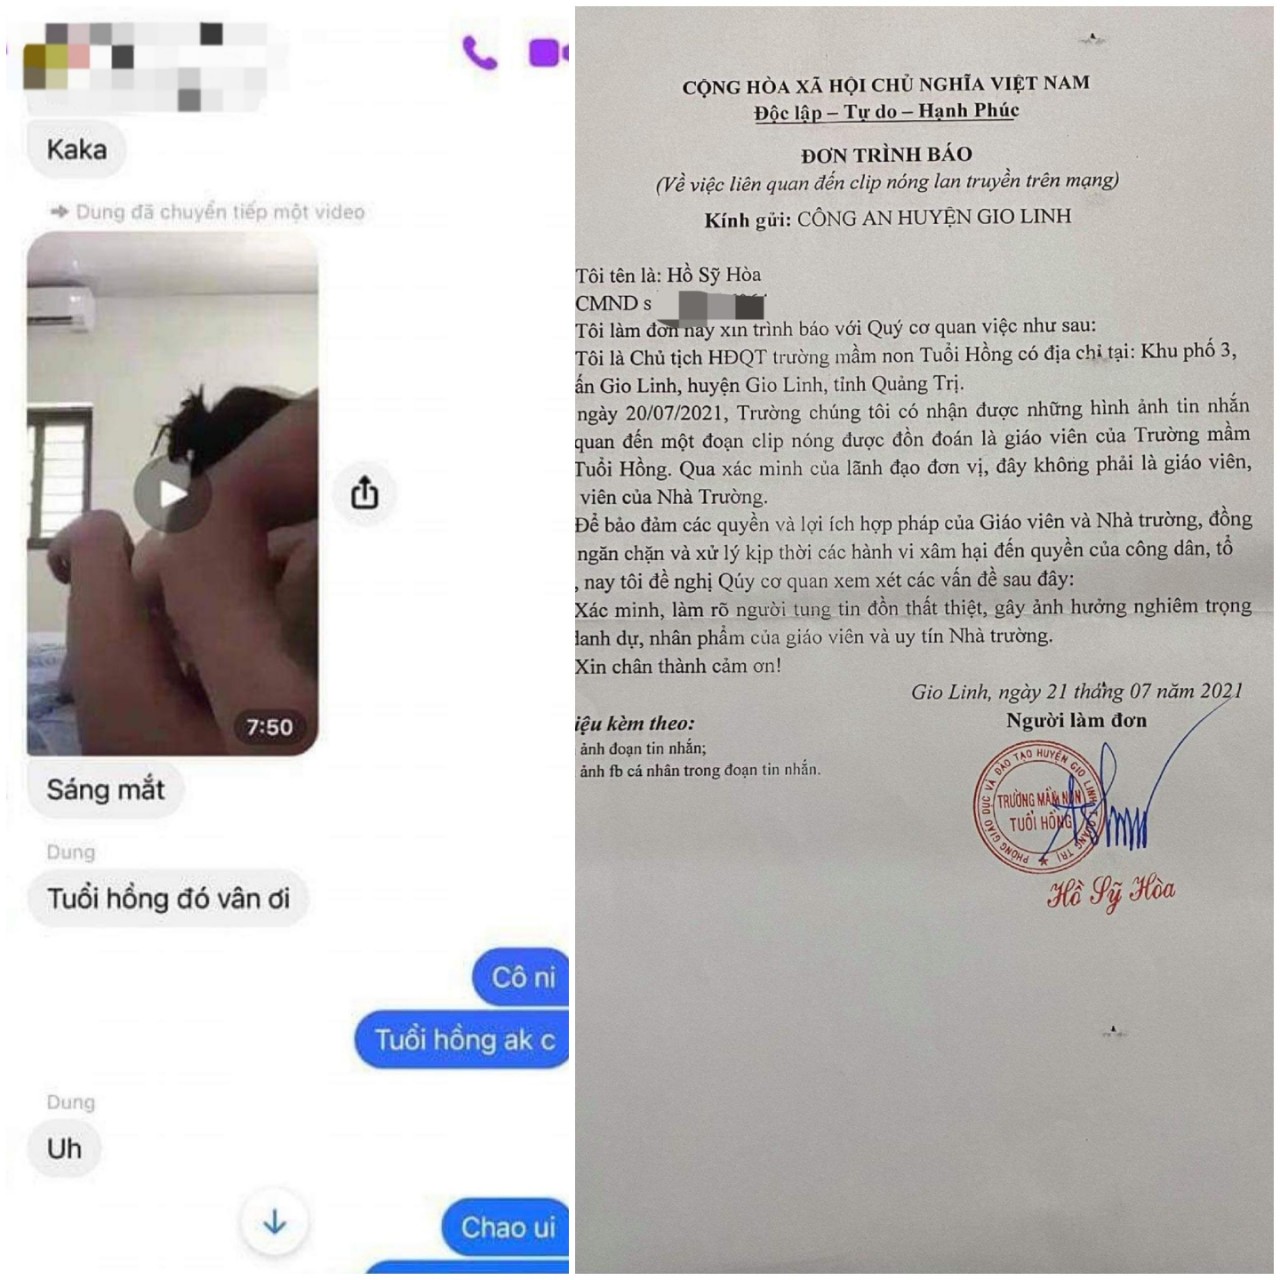 Quảng Trị: Xác minh thông tin giáo viên trường mầm non xuất hiện trong clip nóng - Ảnh 1.